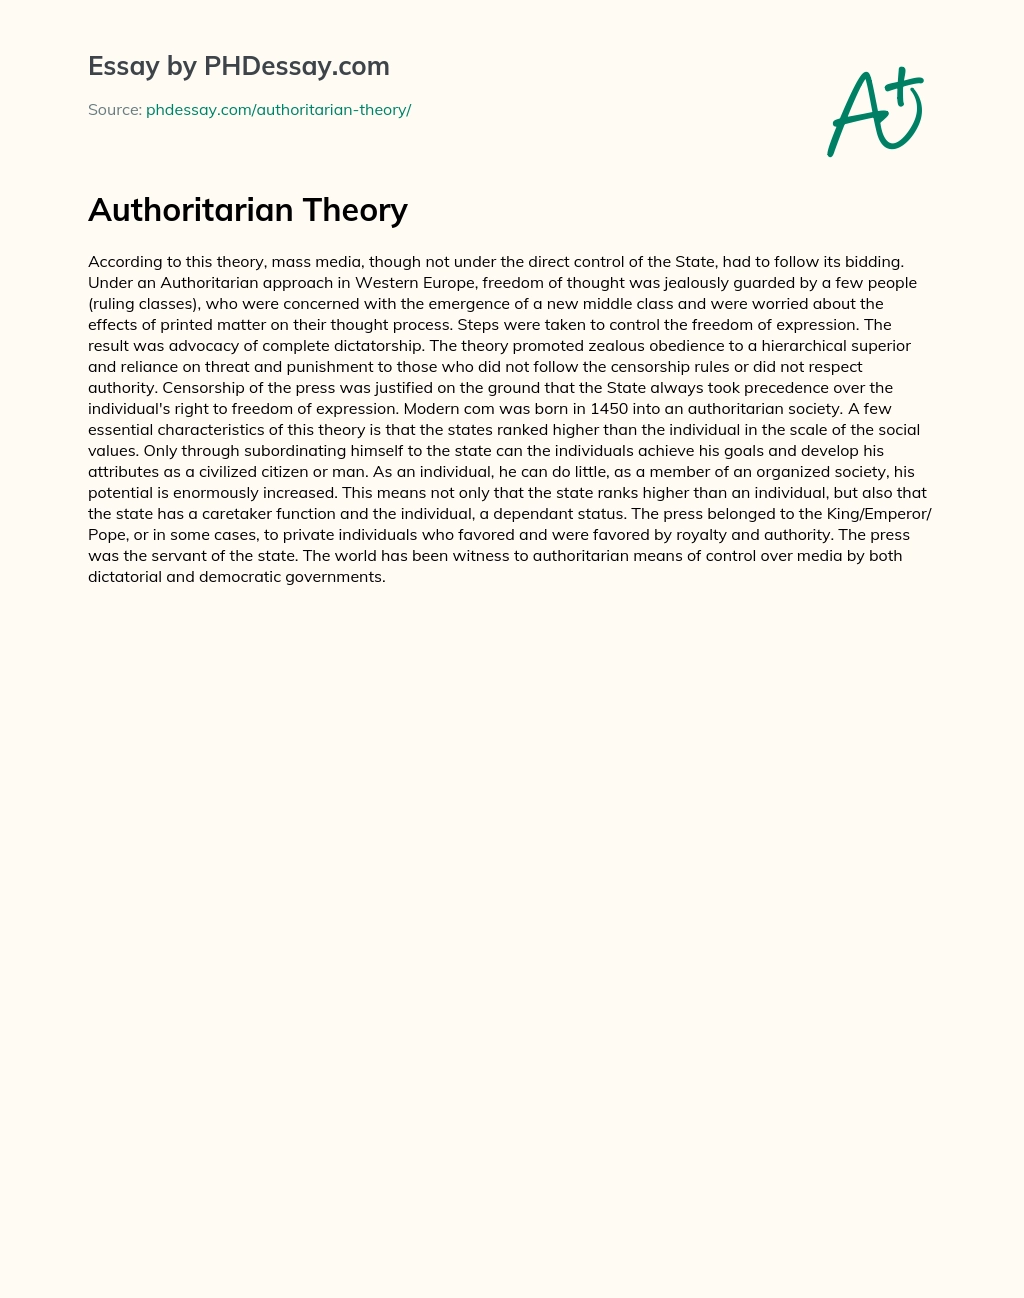 Authoritarian Theory essay